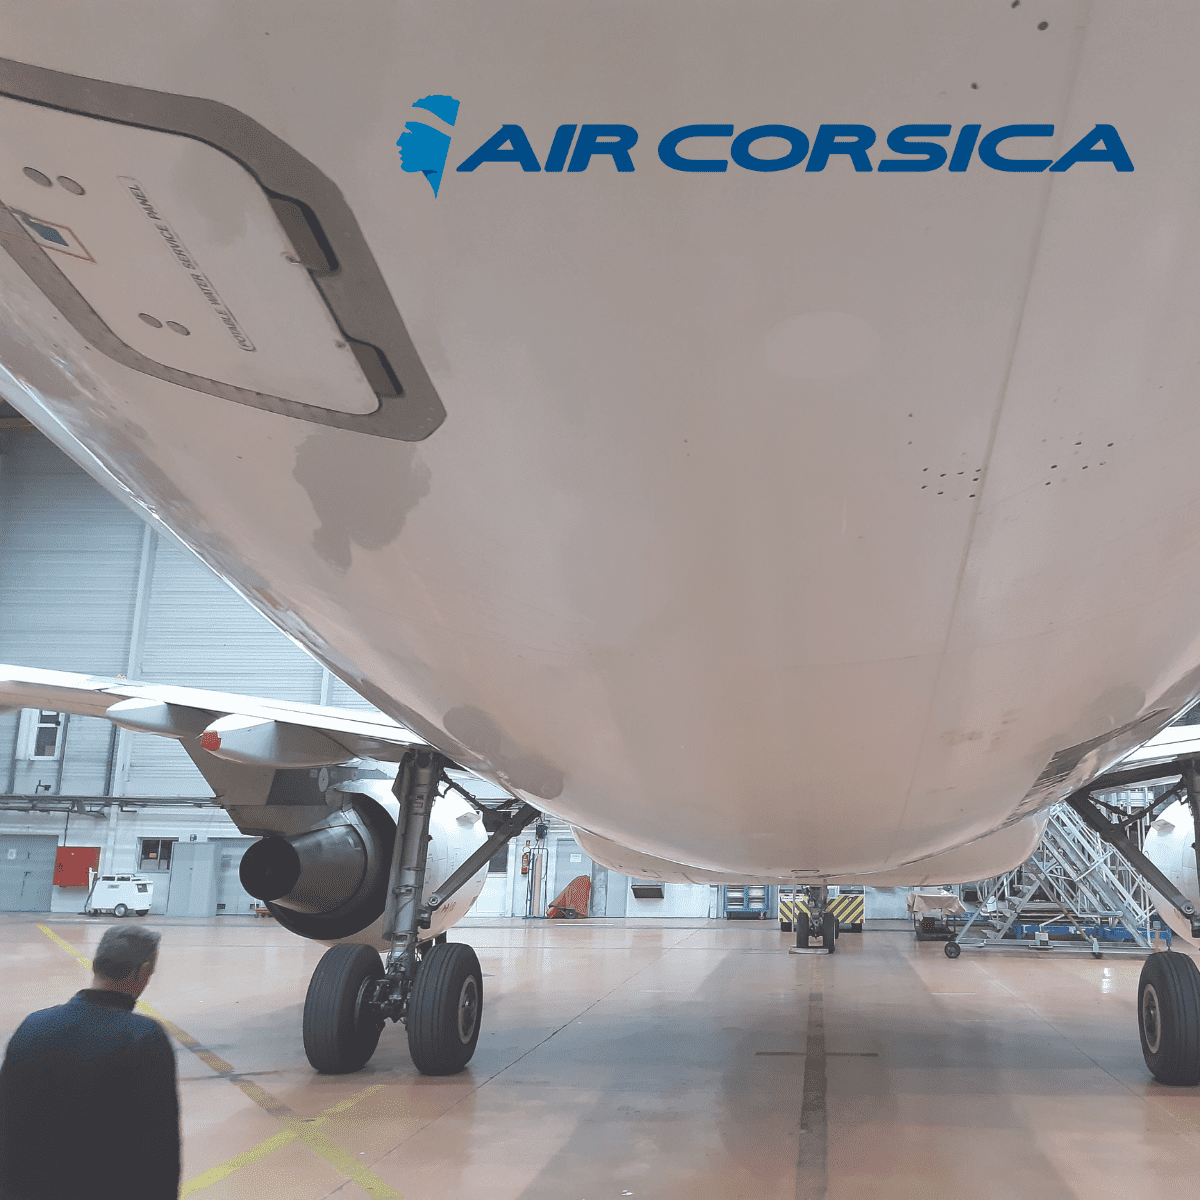 Flight test Air Corsica Airbus A320 Boing B747 Fast Paint Repair Aircraft Aeronautic MRO, Flight test with Air Corsica